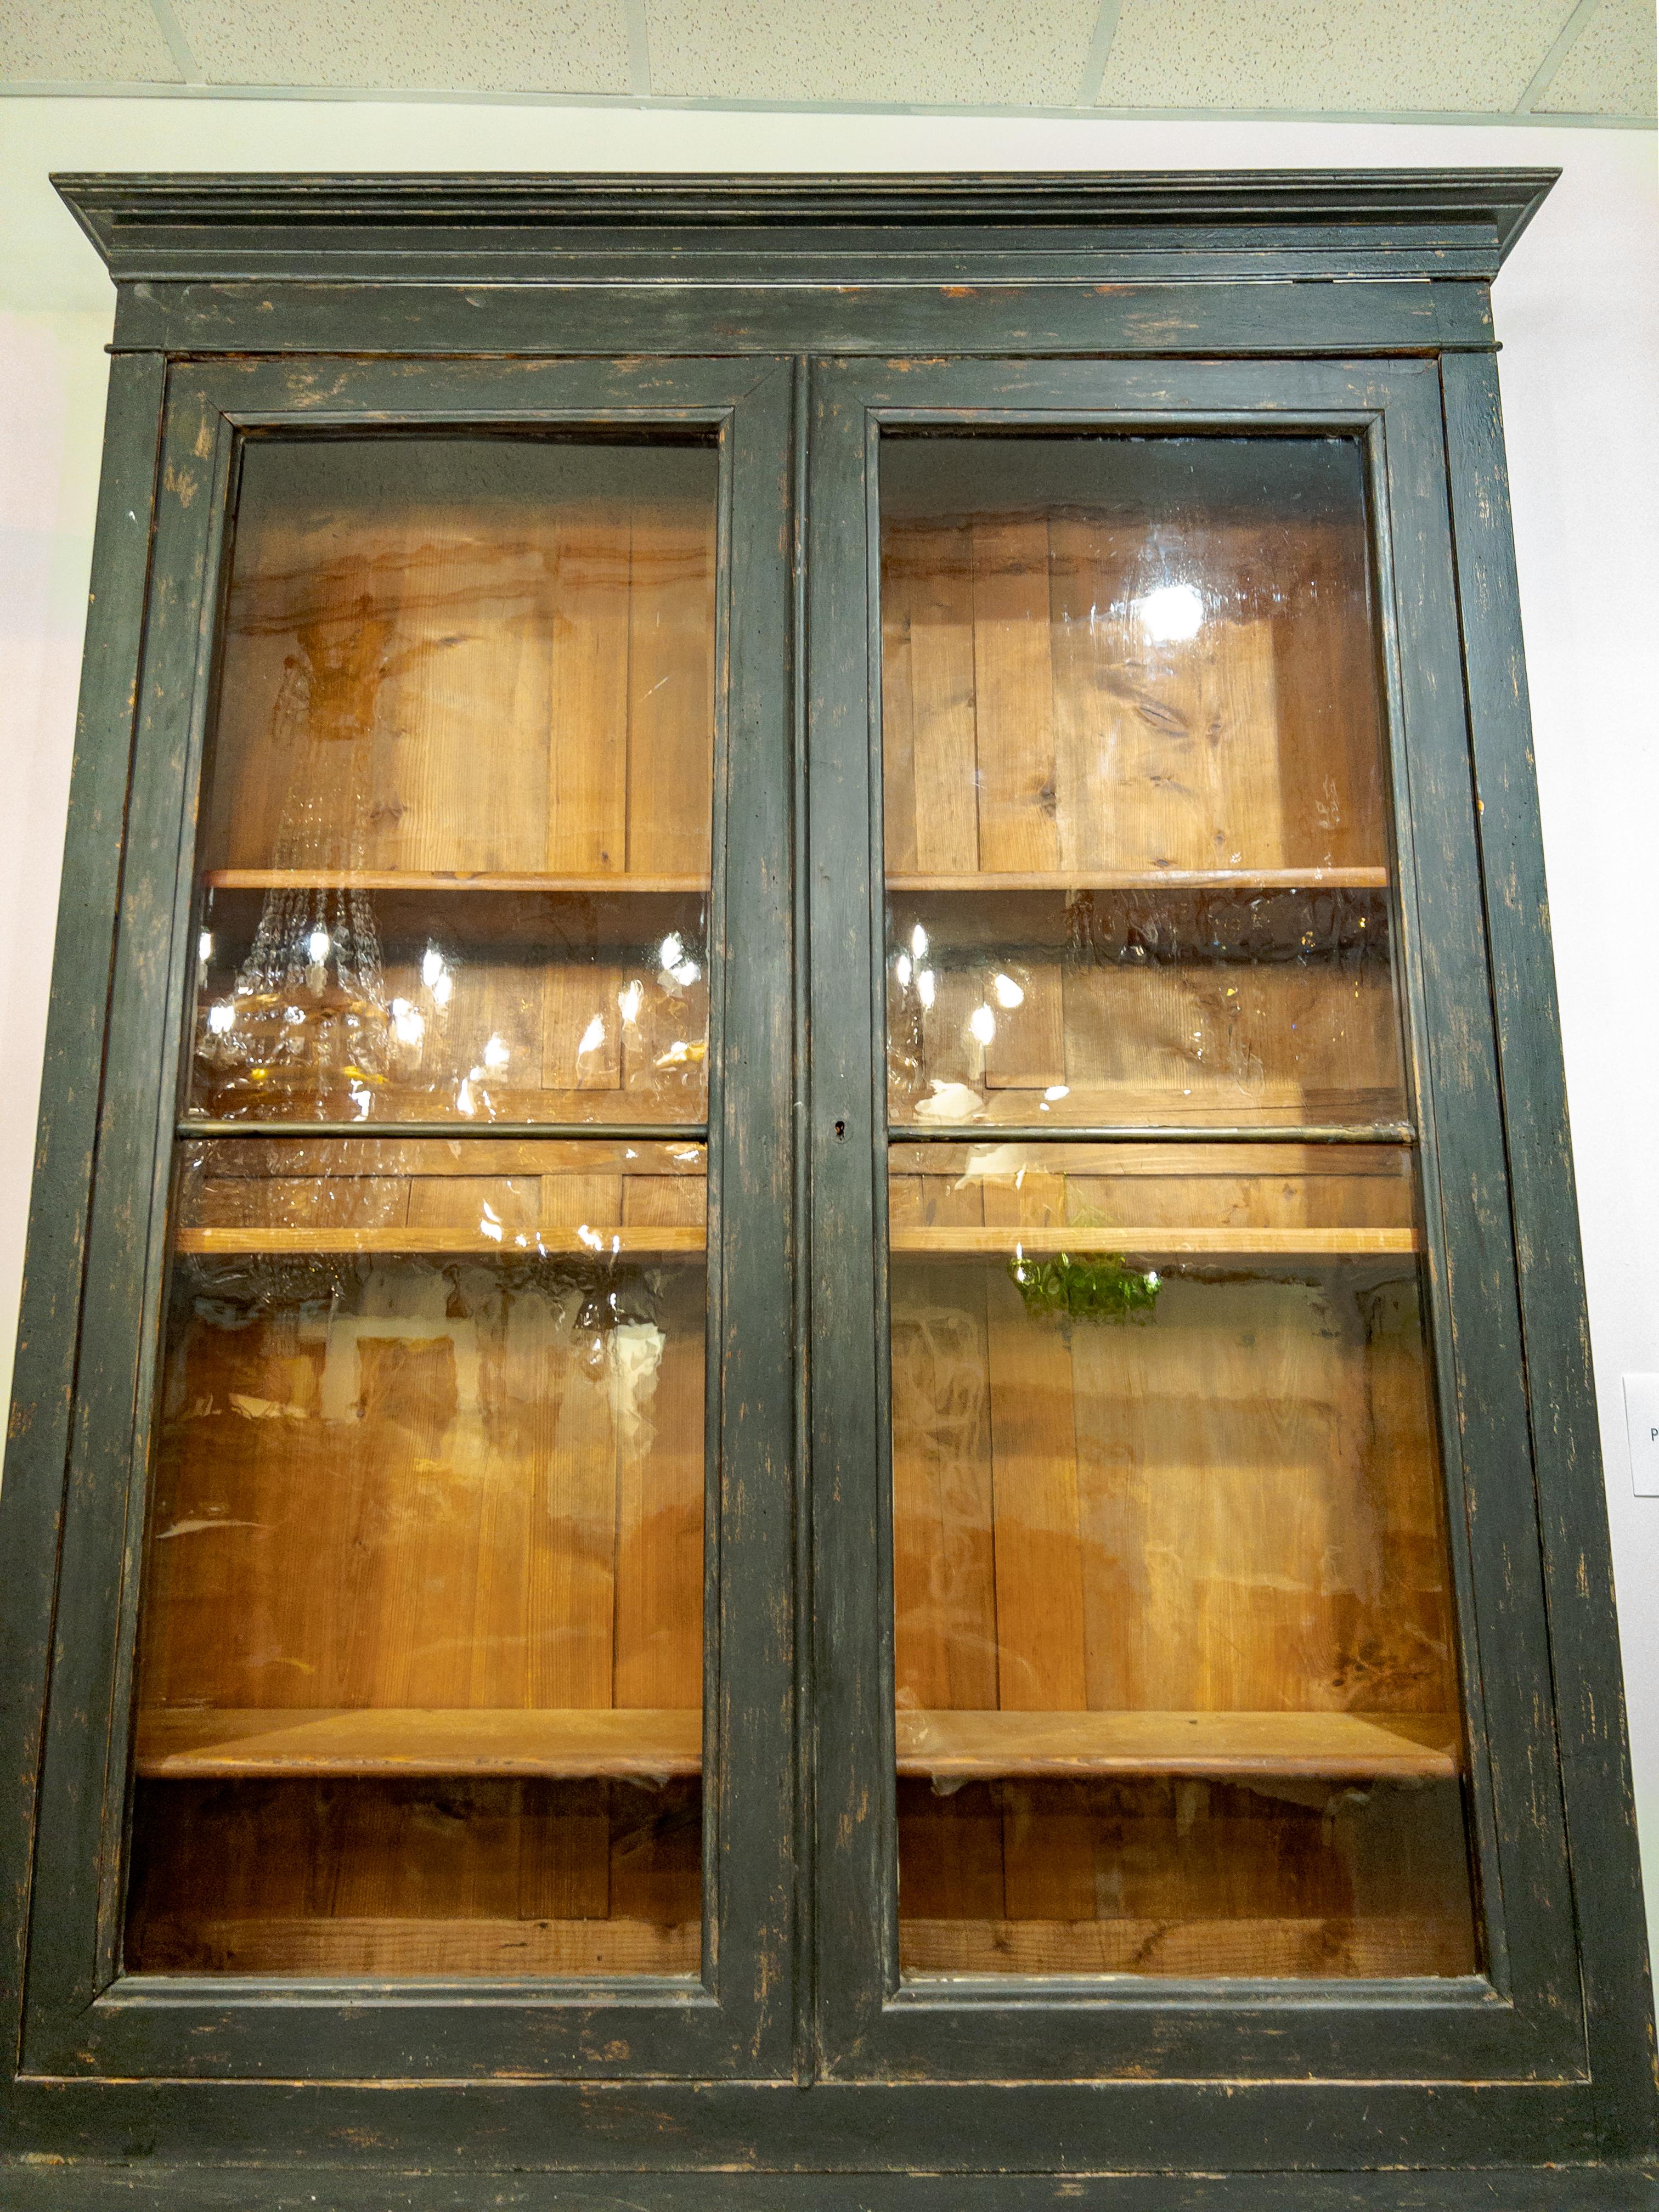 Italienische Bibliothek aus dem 19. Jahrhundert aus bemaltem Holz mit schönen gewellten Glas-/Verglasungstüren und 3 beweglichen Regalen im Inneren. Darunter befinden sich 2 getäfelte Türen mit 1 Einlegeboden, so dass insgesamt 4 Einlegeböden in